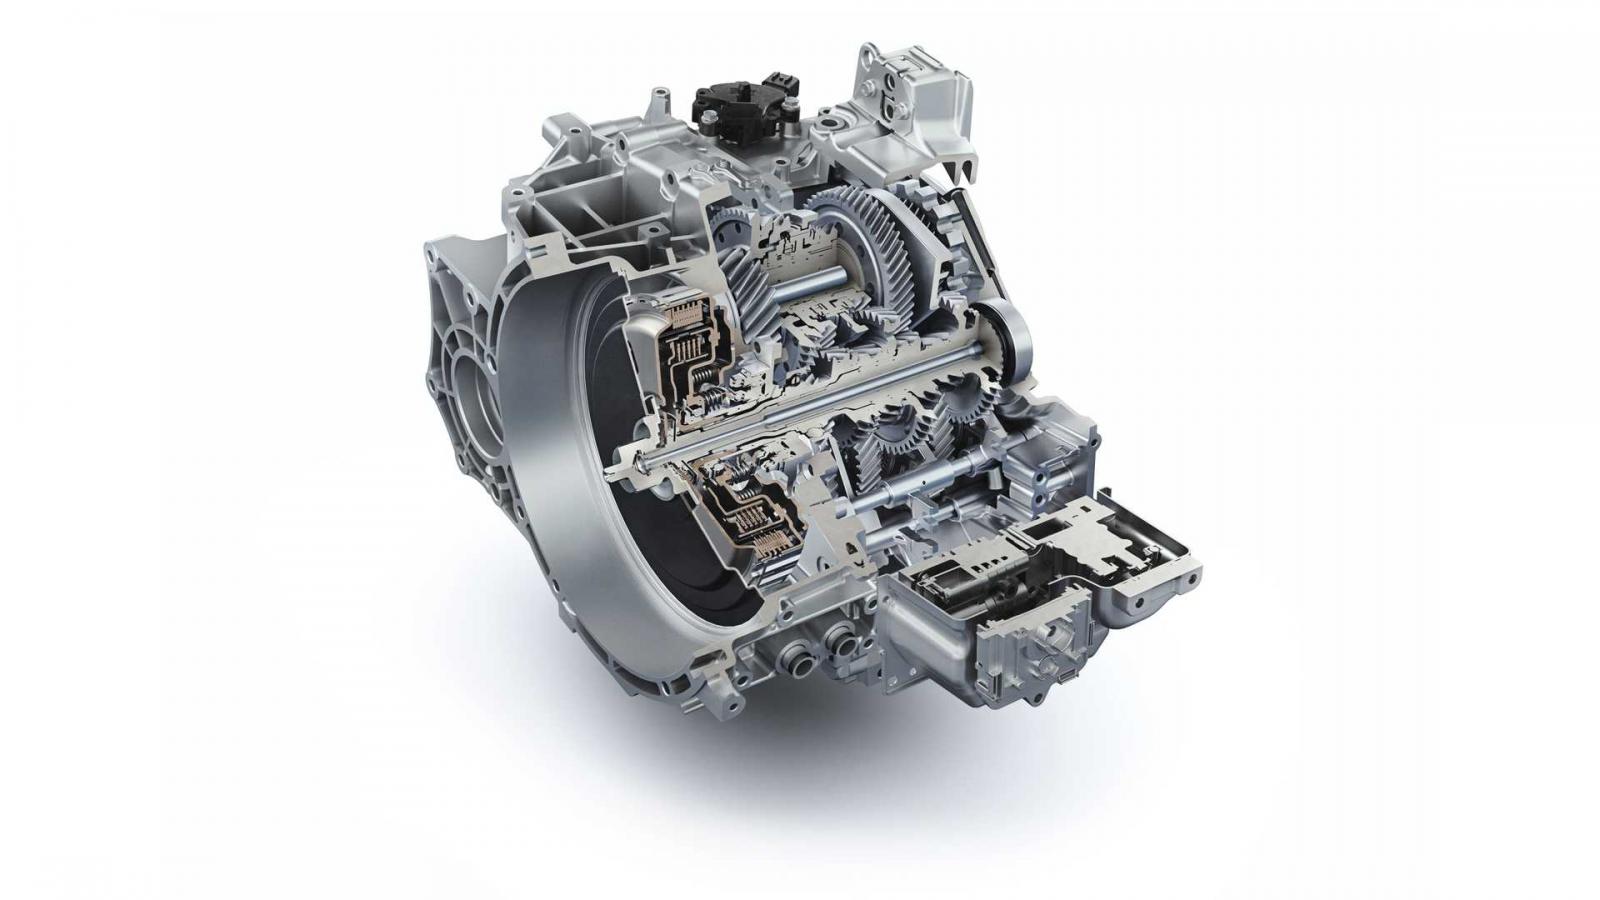 Tùy chọn hộp số mới góp phần tăng sức mạnh cho Hyundai Veloster N 2021.